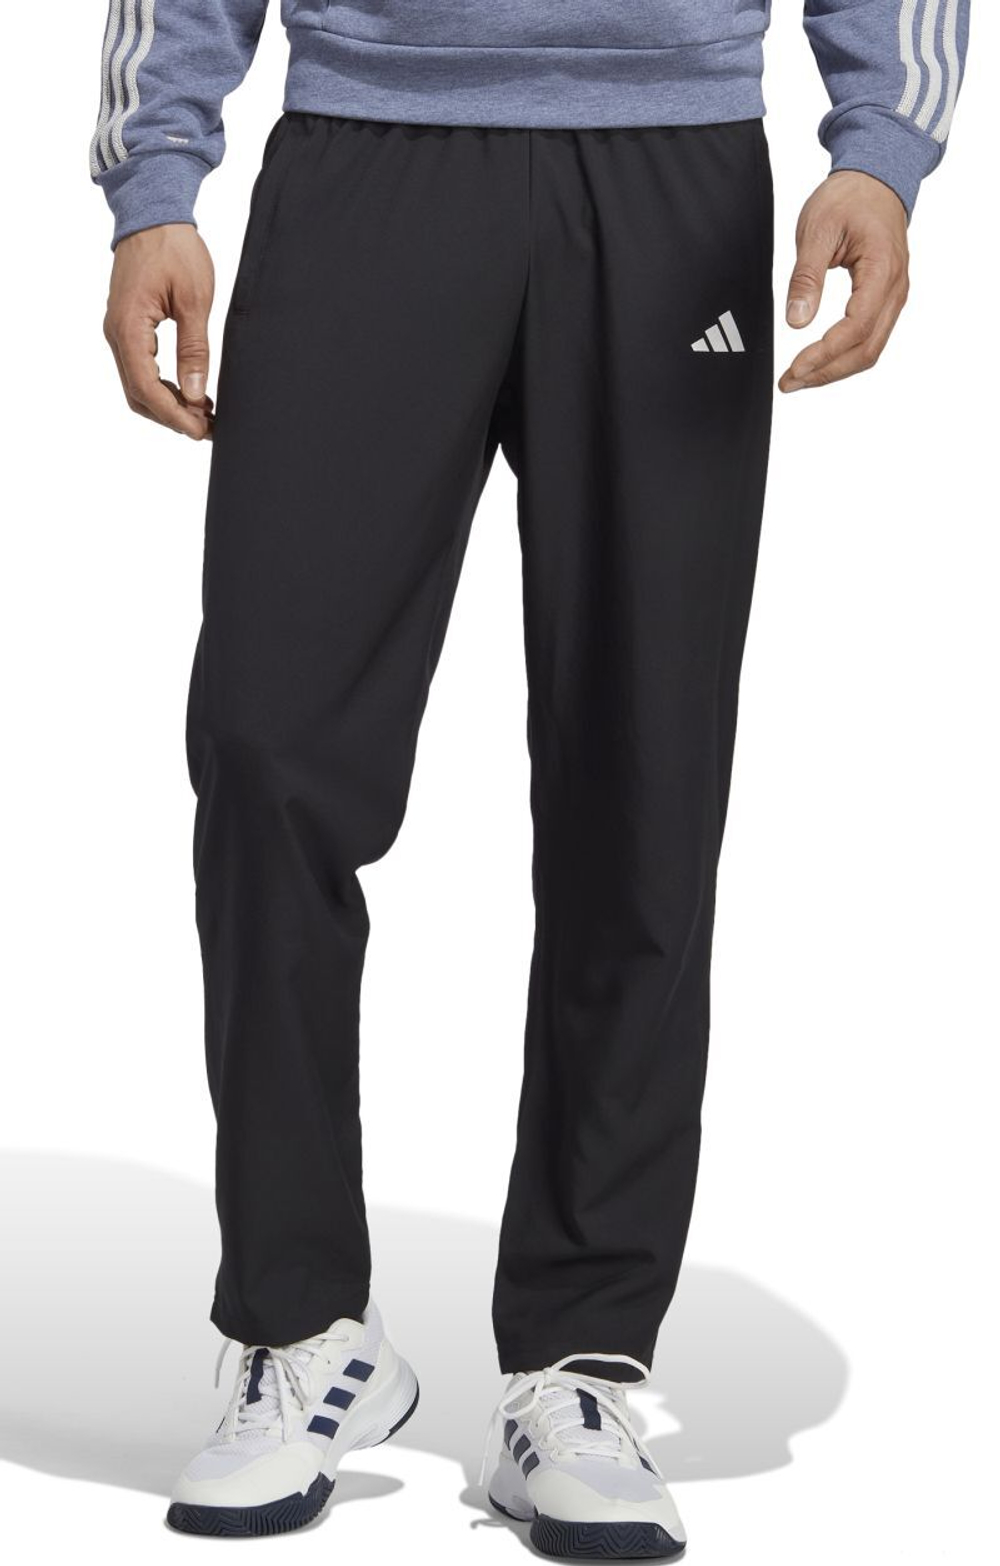 Мужские теннисные штаны Adidas Stretch Woven Tennis Pants - black - купить  по выгодной цене